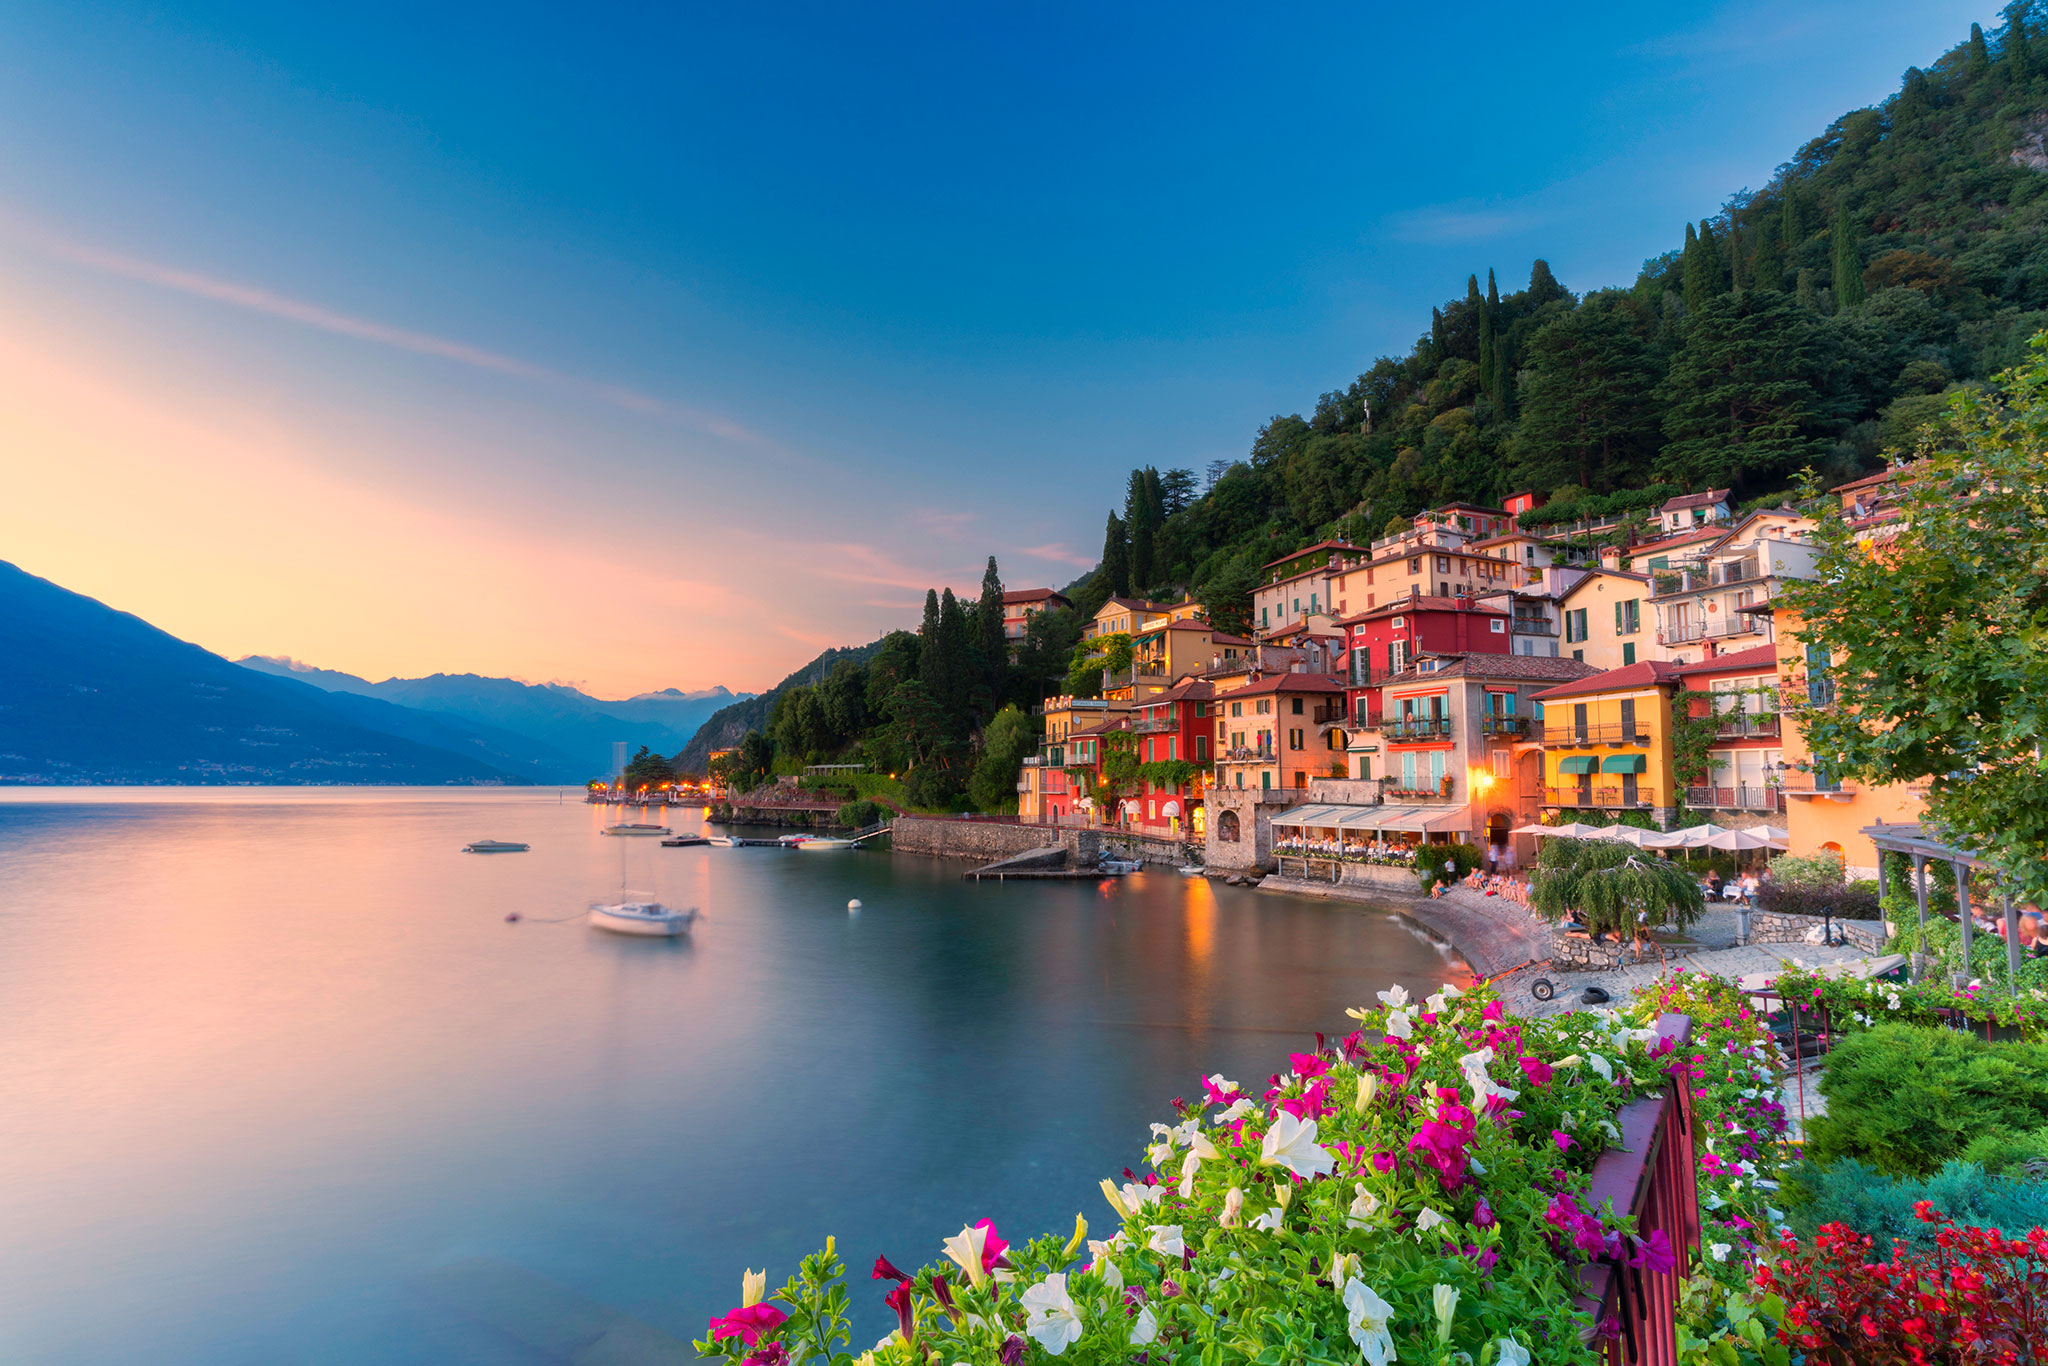 La puesta de sol ilumina el pueblo tradicional de Varenna, a orillas del lago Como.